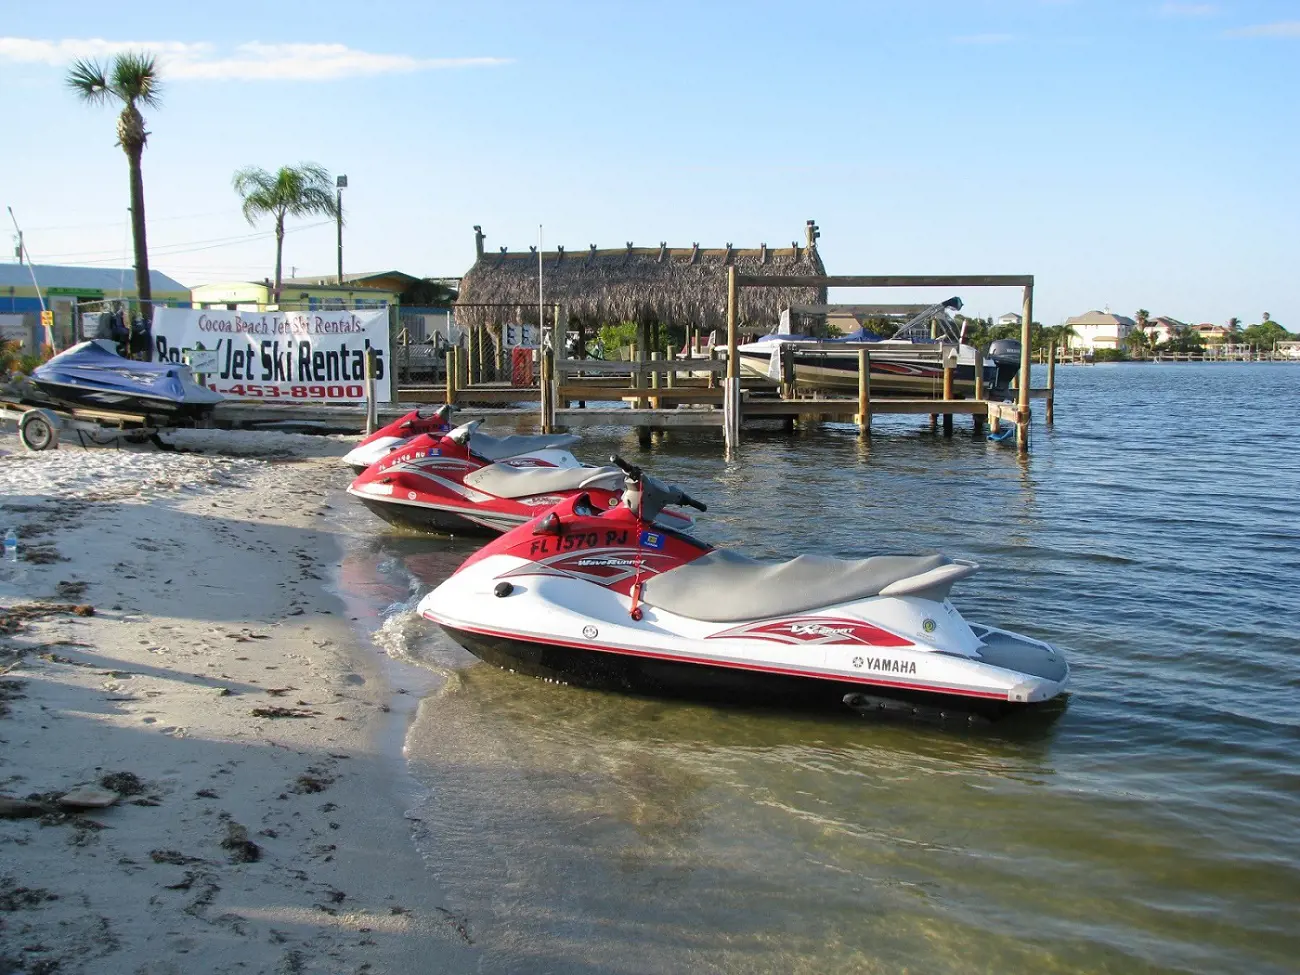  Cocoa Beach Jet Ski and Boat Rental is based in both Cocoa Beach and Merritt Island